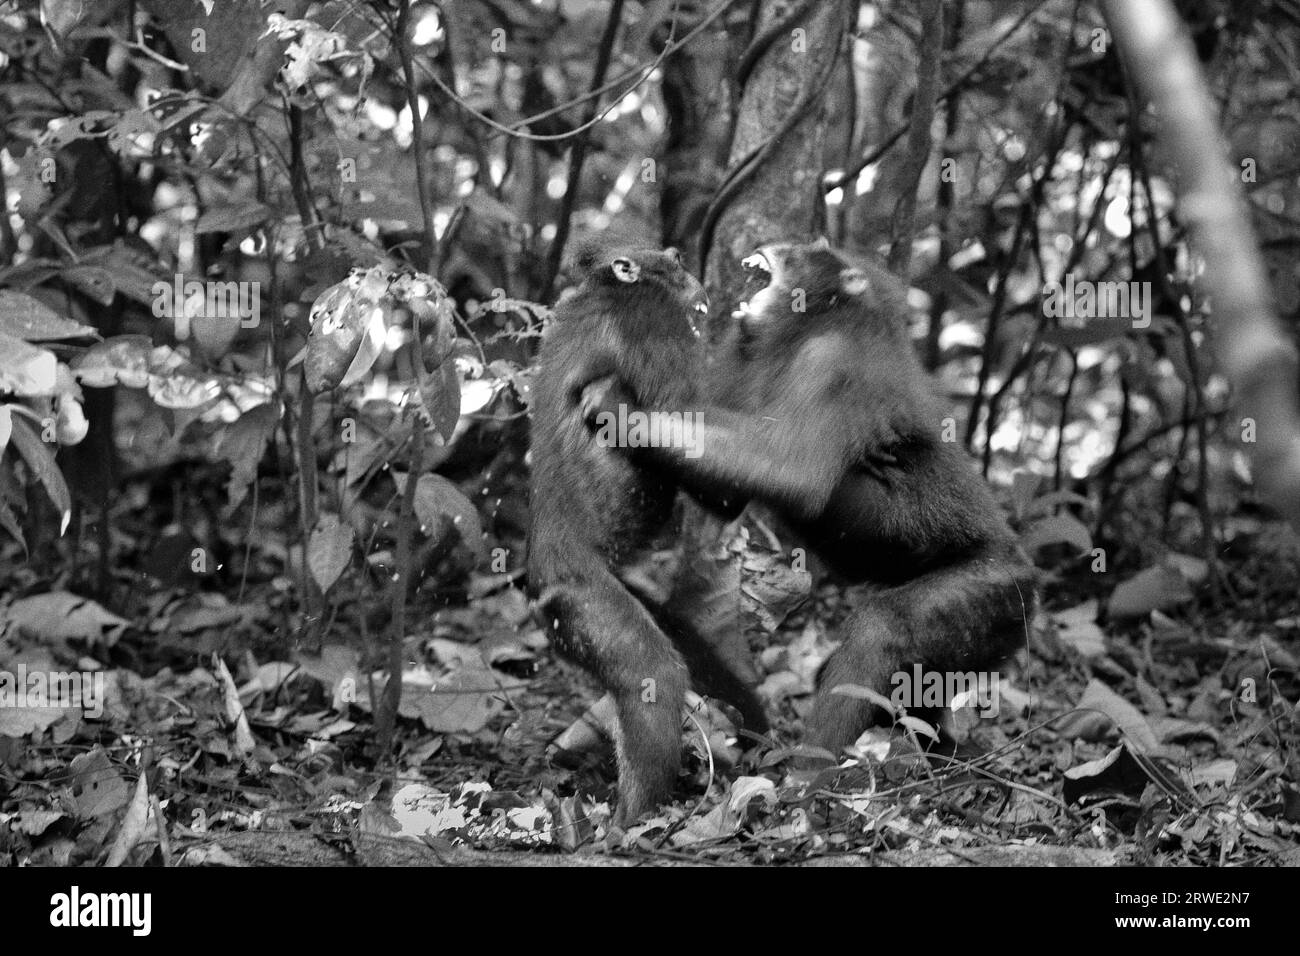 Due individui di macaco crestato (Macaca nigra) sono coinvolti in un comportamento aggressivo l'uno verso l'altro, in quanto svolgono attività sociali nella foresta di Tangkoko, Sulawesi settentrionale, Indonesia. La frequenza e l'intensità dell'aggressione tra individui maschili in un gruppo sociale macaco crestato è fortemente correlata alla distanza di rango, secondo Caitlin Reed, Timothy o'Brien e Margaret Kinnaird in un articolo di ricerca pubblicato sull'International Journal of Primatology nel 1997. Tuttavia, altri primatologi hanno aggiunto che combattere o inseguirsi a vicenda sono parte delle attività sociali del macaco crestato. Foto Stock